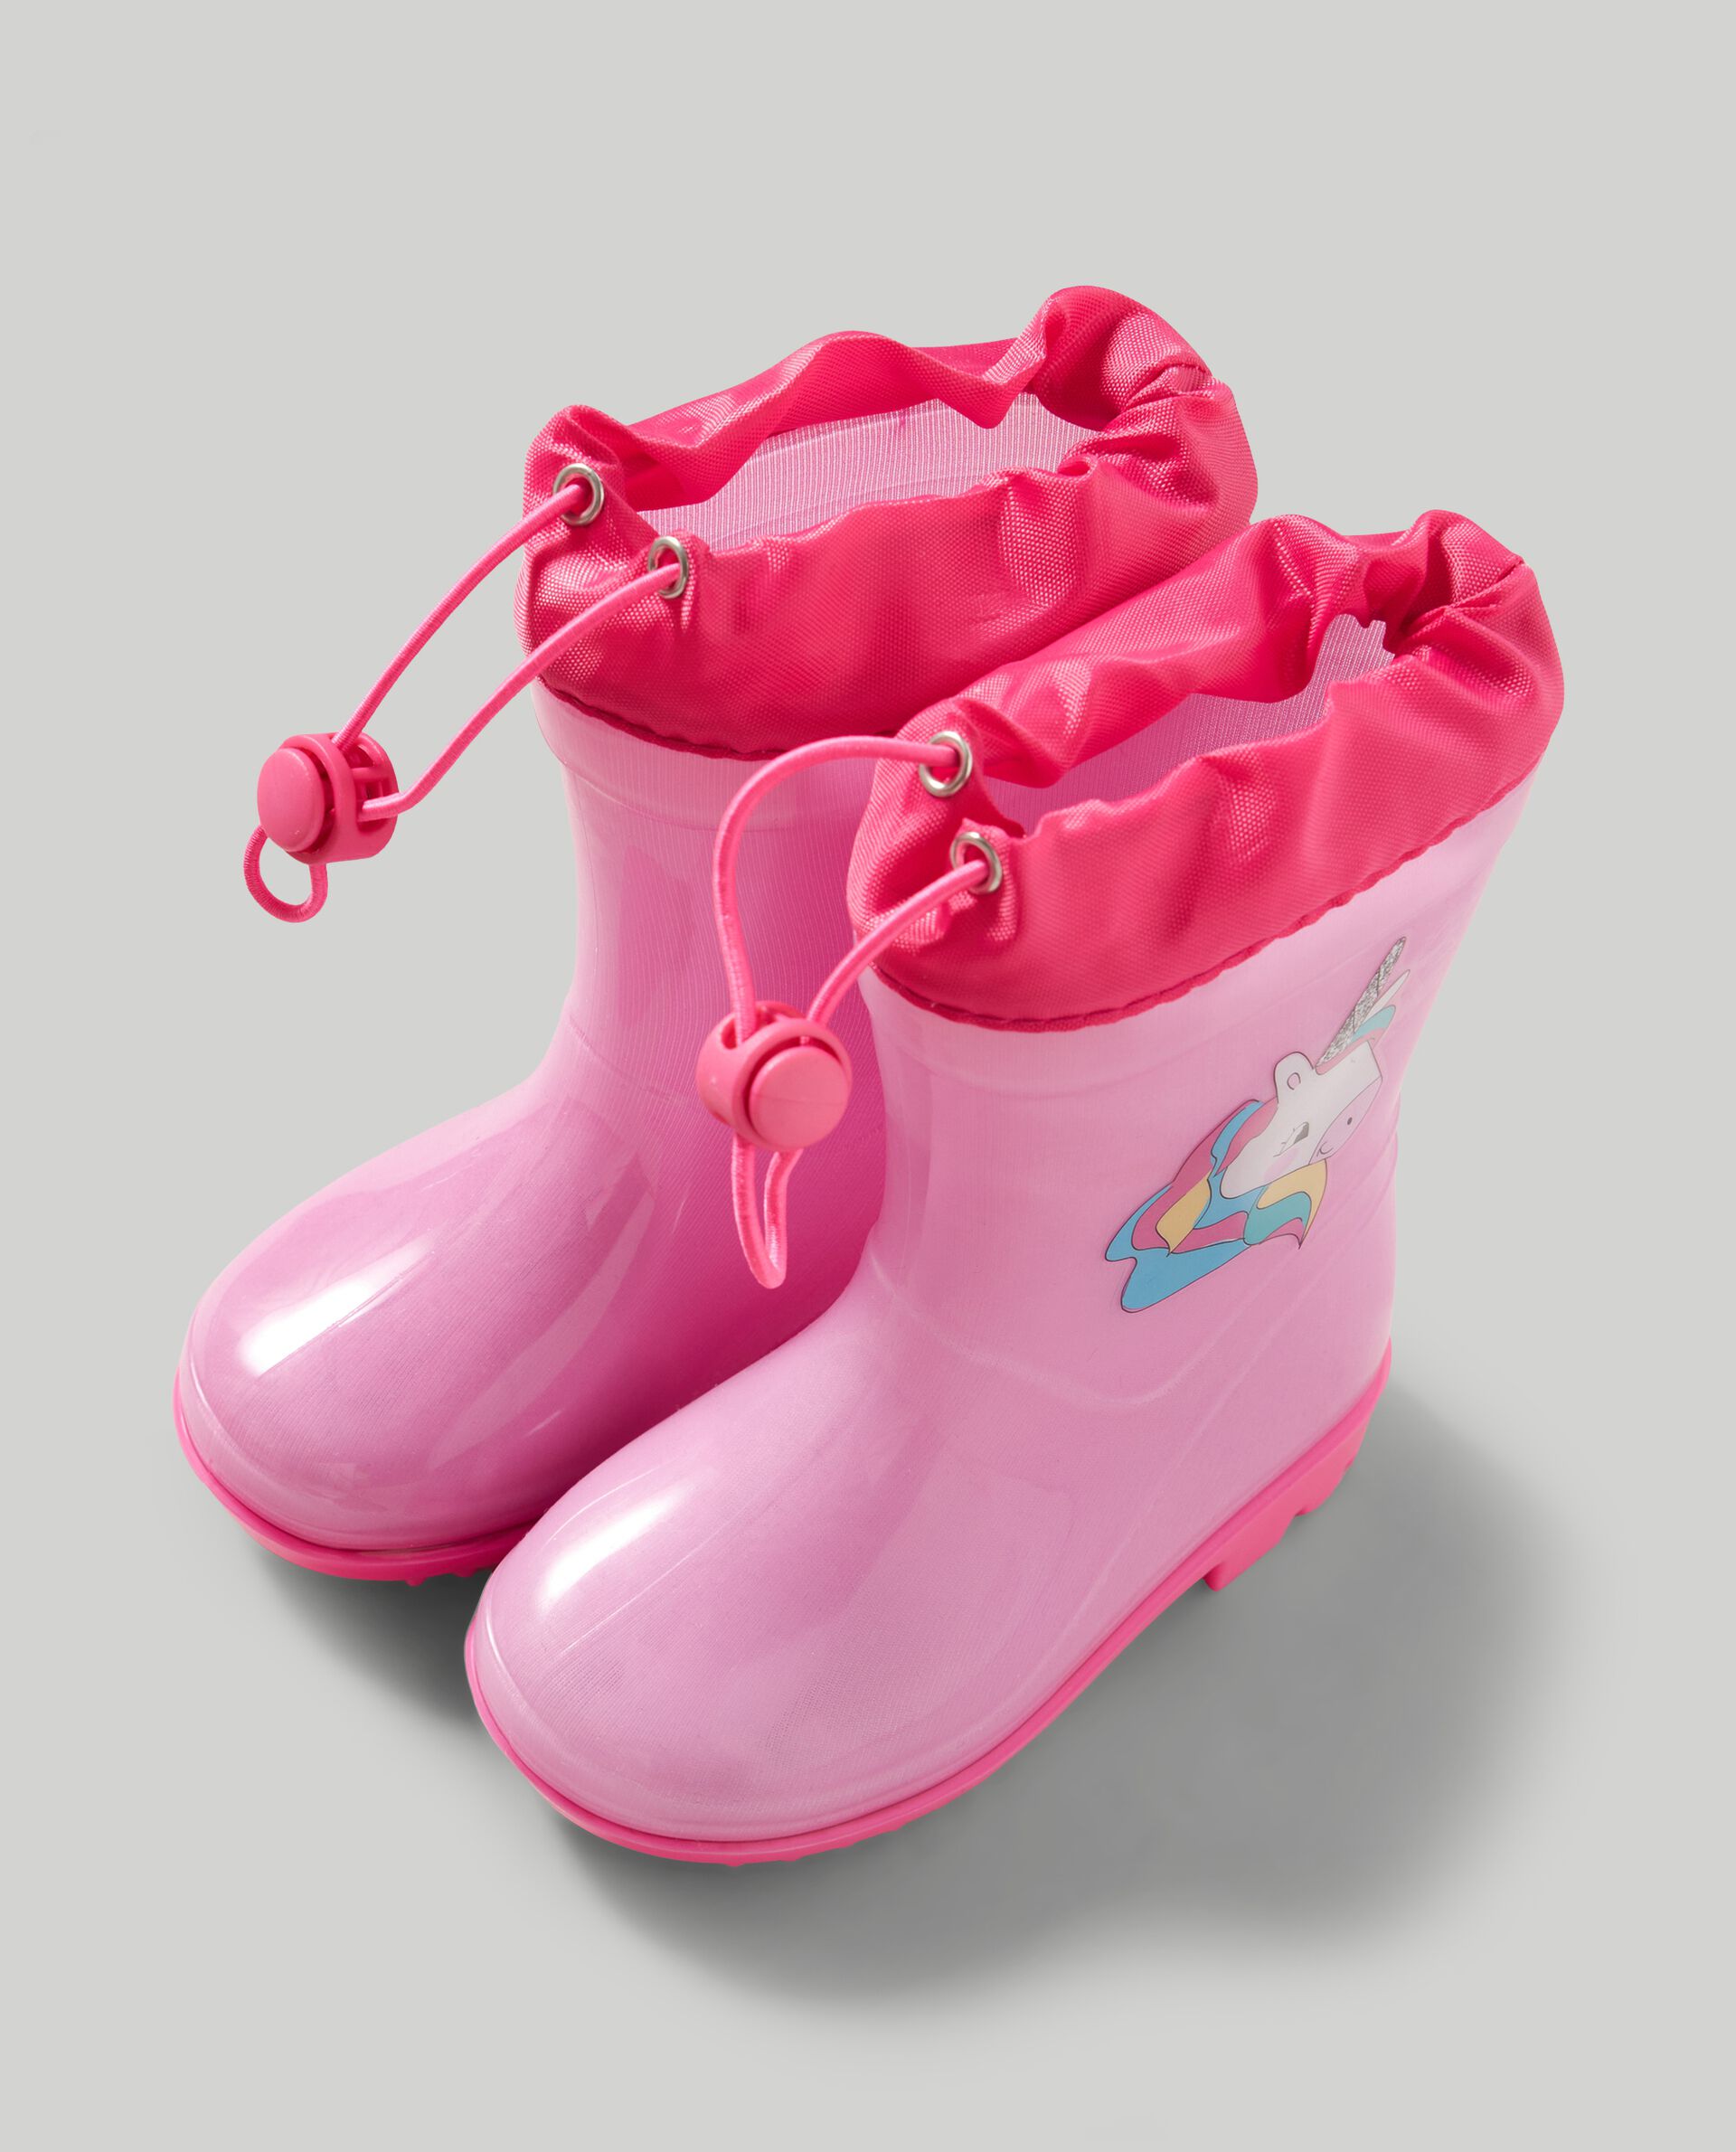 Stivali anti-pioggia unicorno bambina